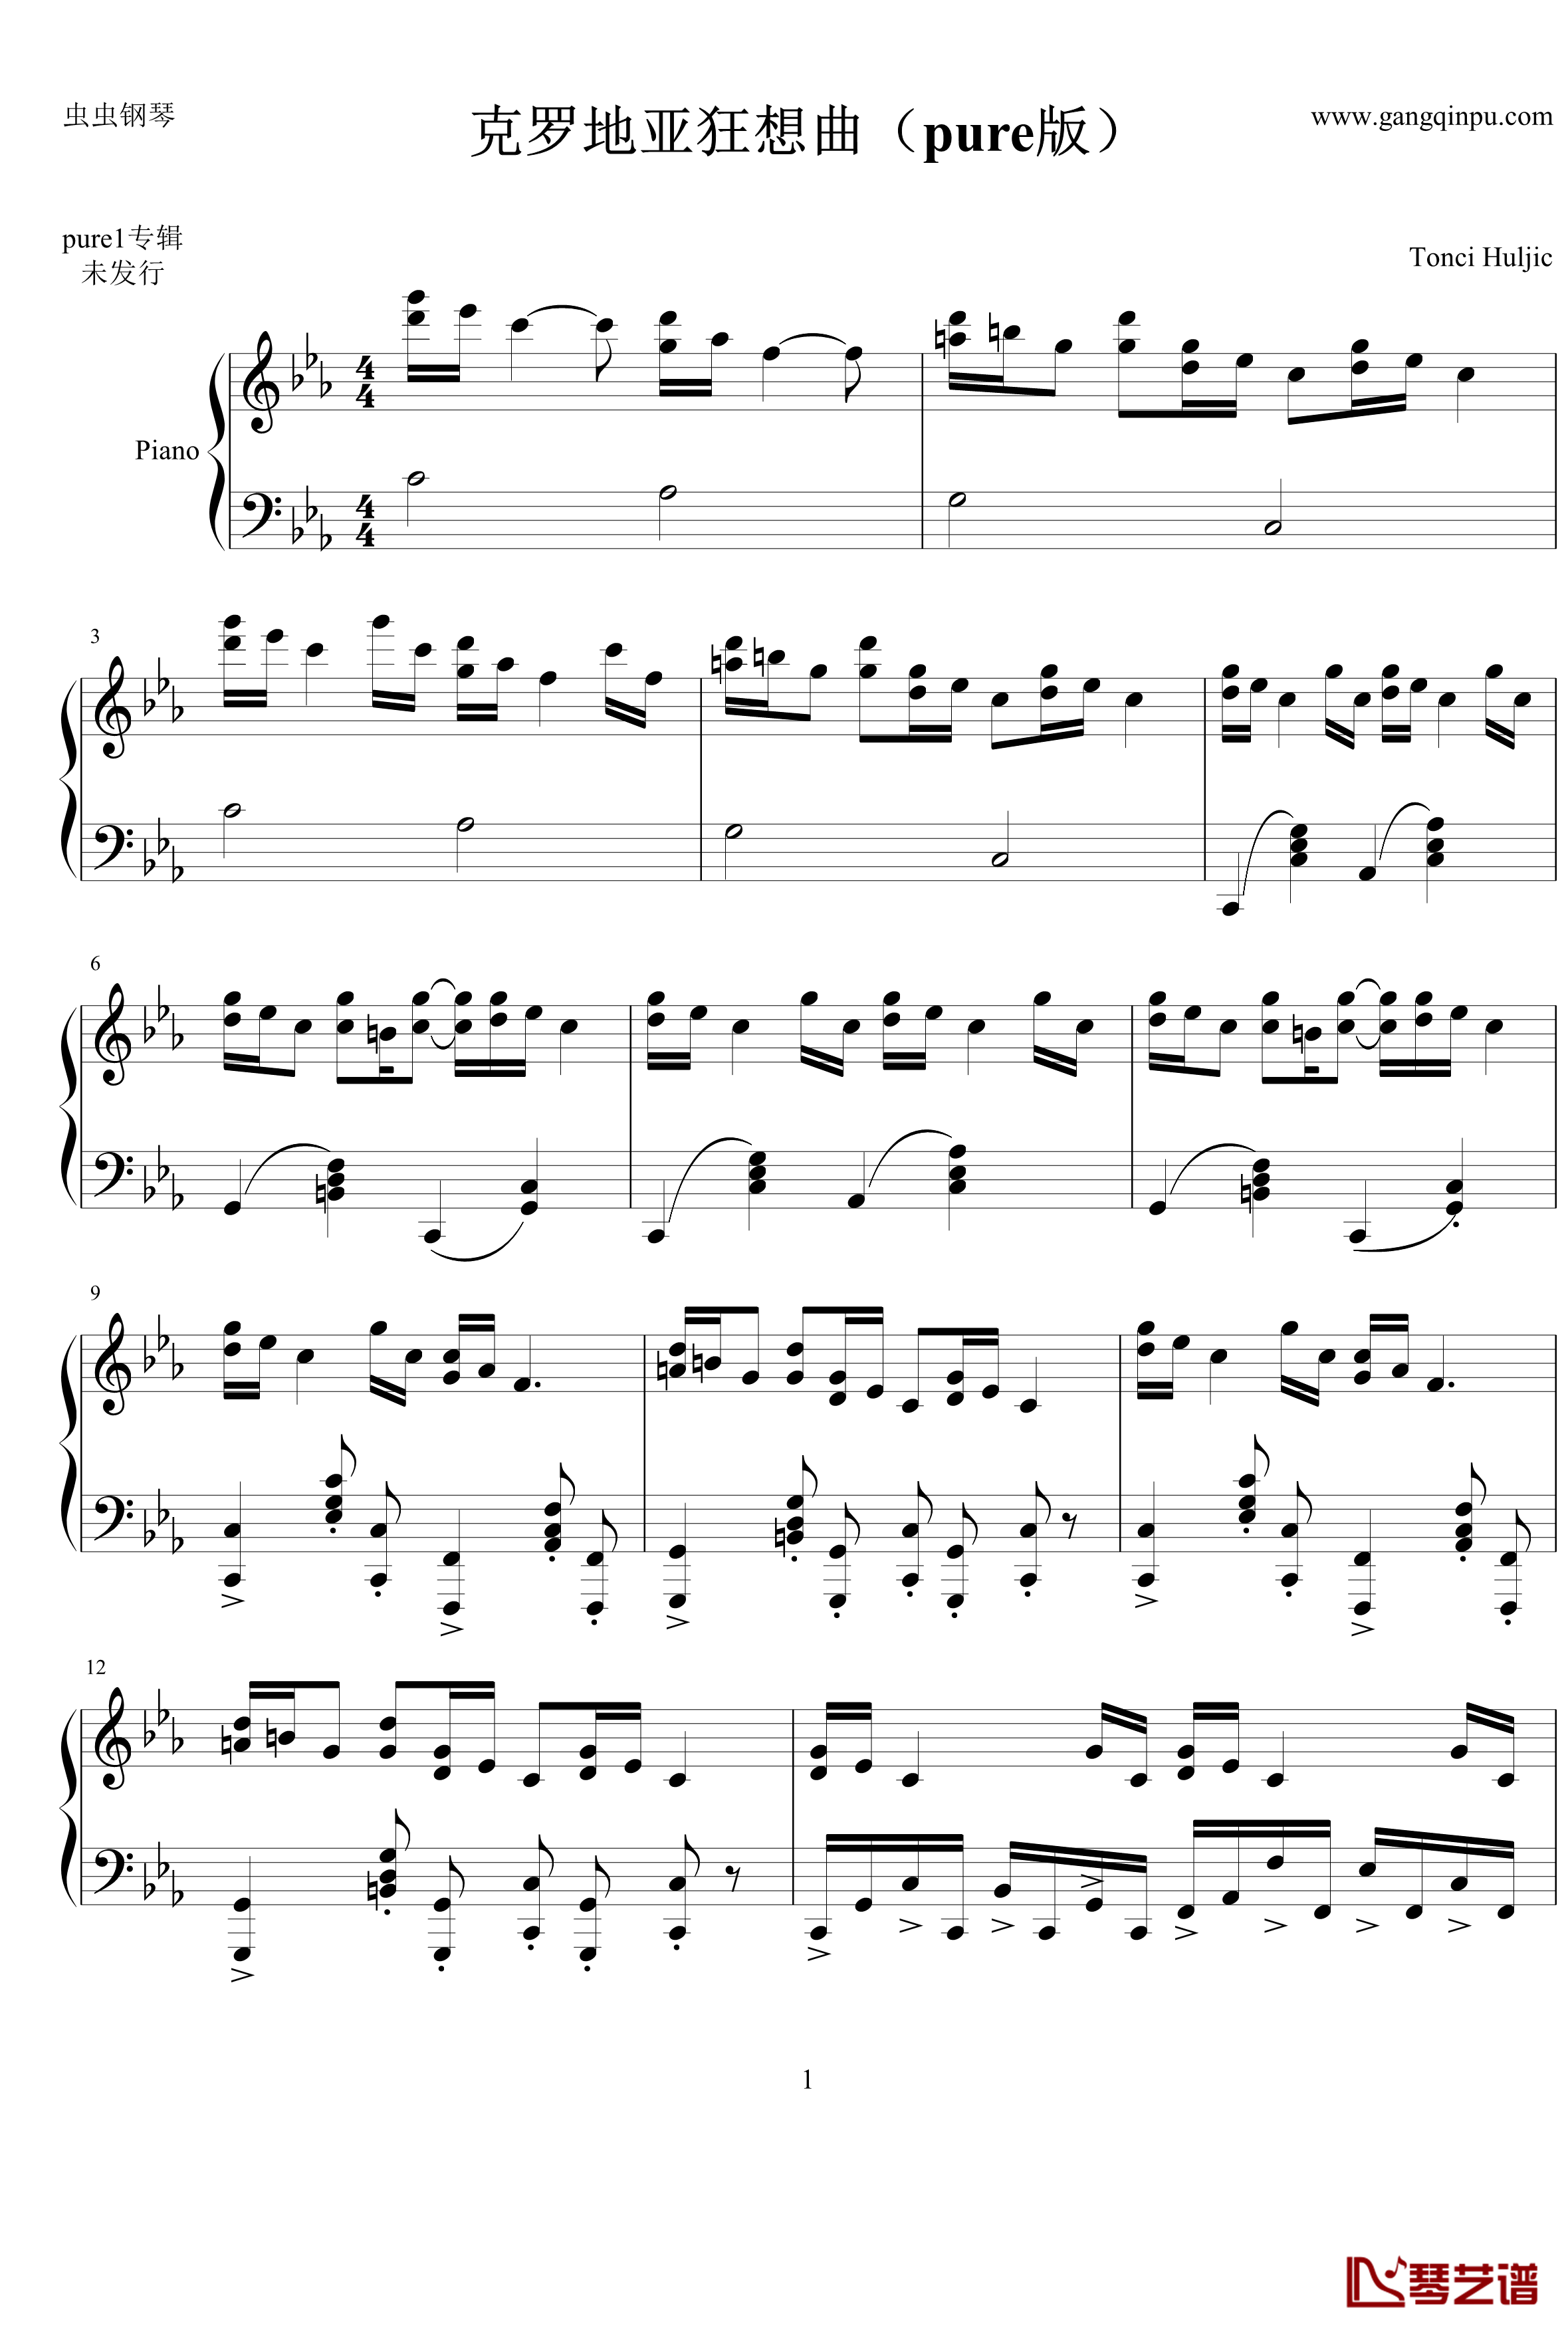 克罗地亚狂想曲pure1钢琴谱-现已绝版-马克西姆-Maksim·Mrvica1